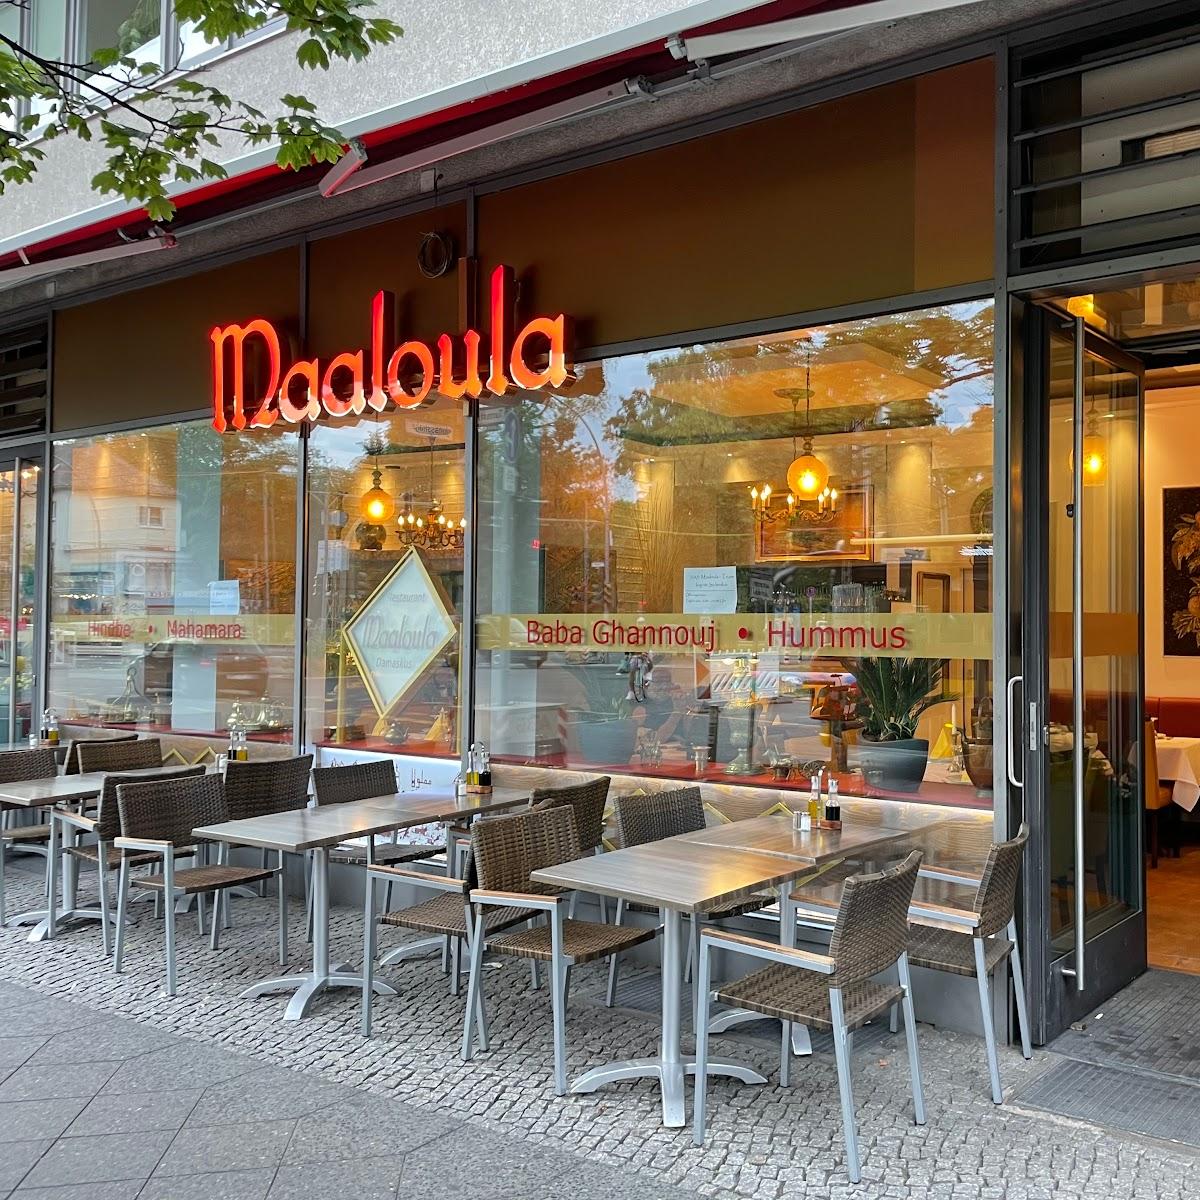 Restaurant "Maaloula" in Berlin